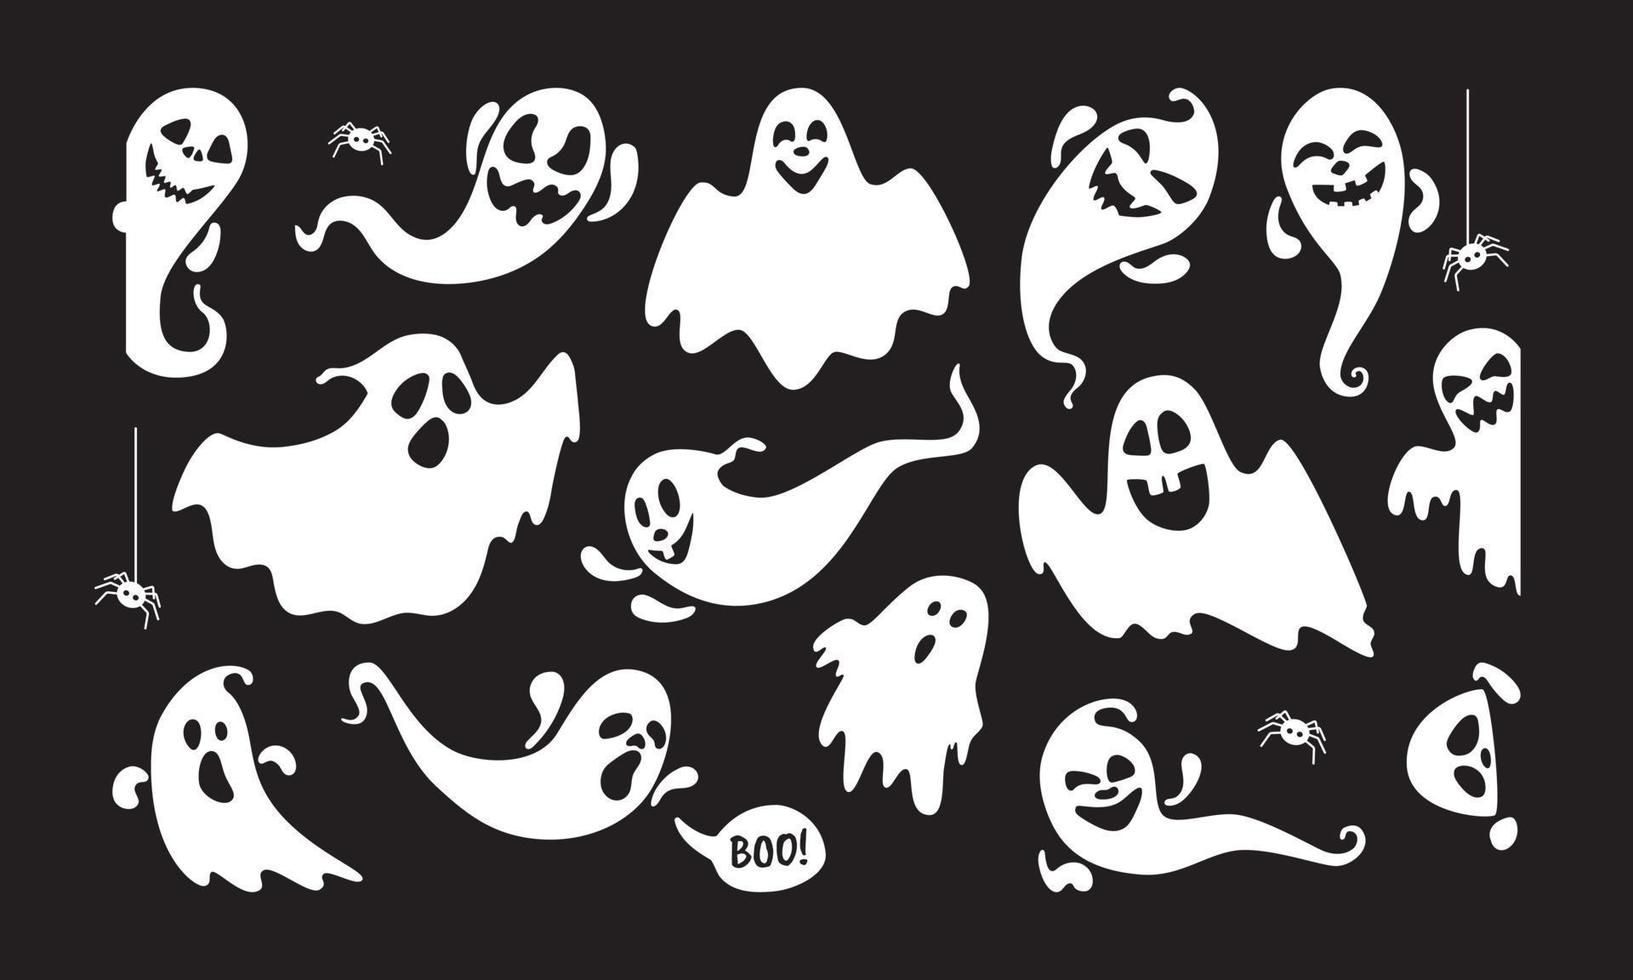 ensemble d'illustrations vectorielles de conception de style plat de personnages de vacances fantômes mignons isolés sur fond sombre. vecteur